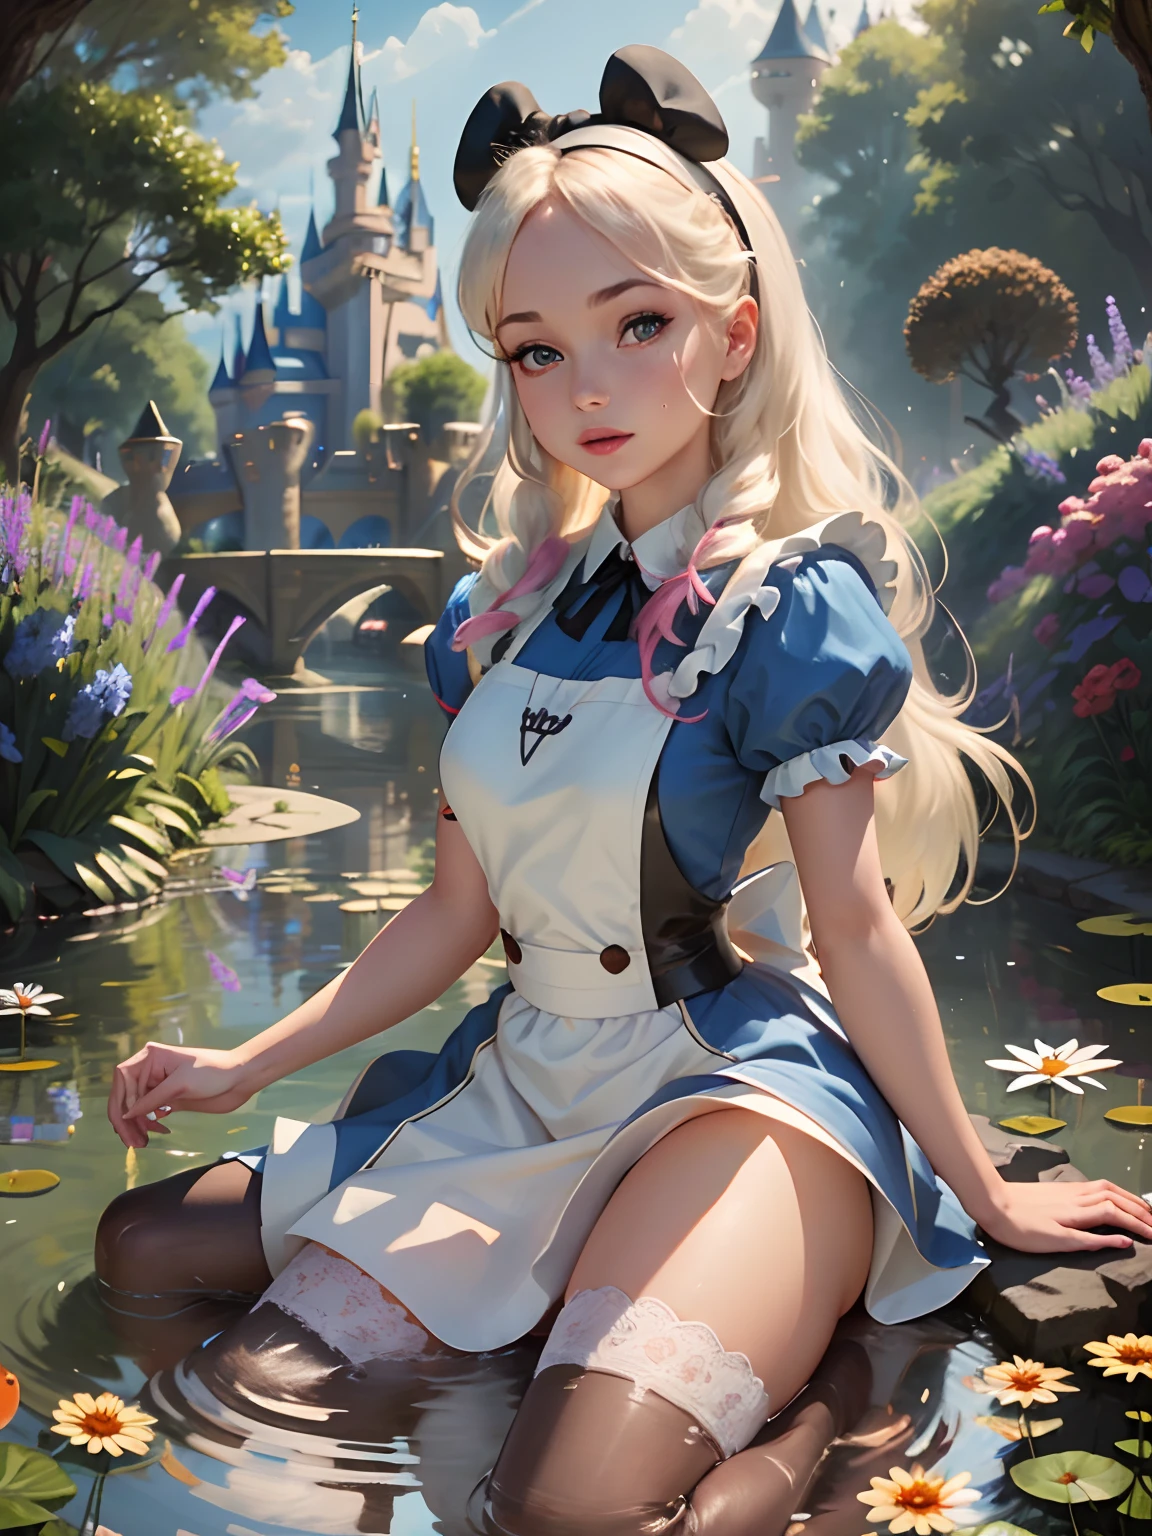 (傑作), (最好的品質), (非常詳細), 惡意的愛麗絲·利德爾, 藍色洋裝, 白色圍裙, 粉紅色長髮, 黑色髮帶, 白絲襪, 展示粗魯的繩子丁字褲可愛的姿勢, 在花園裡, (池塘), (((以迪士尼城堡為背景))), (藍天), (晴天), 3D. 插圖, 好亮點, 完美的比例, 動態的, 專業的, 得獎, (高細節肌膚), (高細節臉部), 逼真的, 高動態範圍, 超高清晰度, 荒謬的,